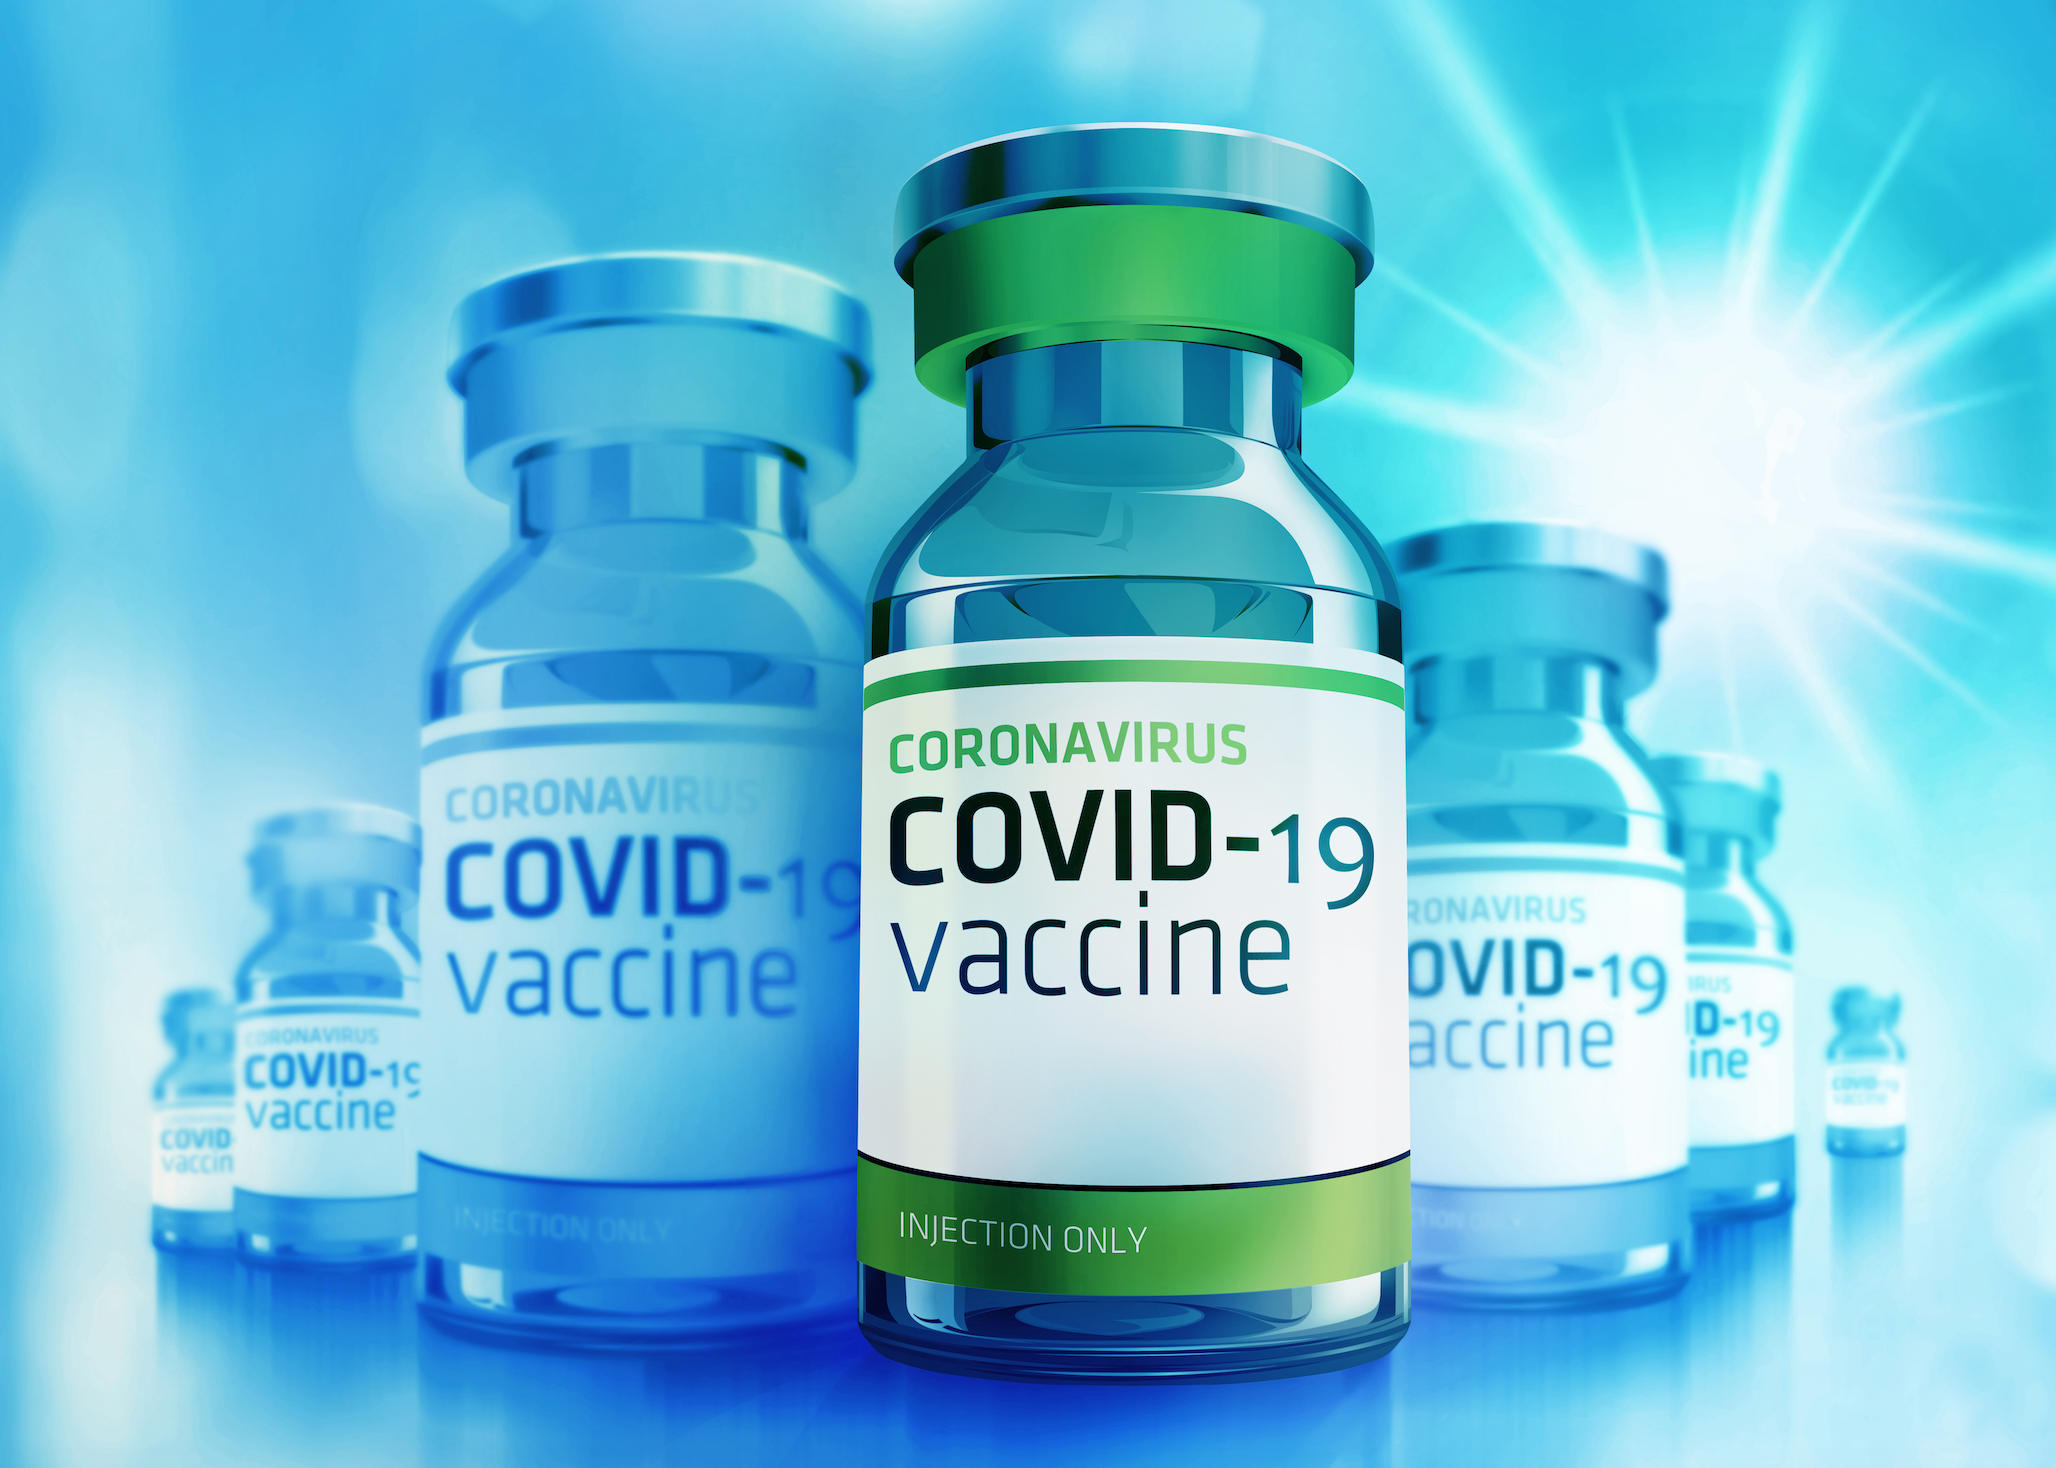 دولت: اولین واکسن بومی mRNA COVID-19 هند در حال حاضر در مراحل آزمایشی بالینی نهایی است